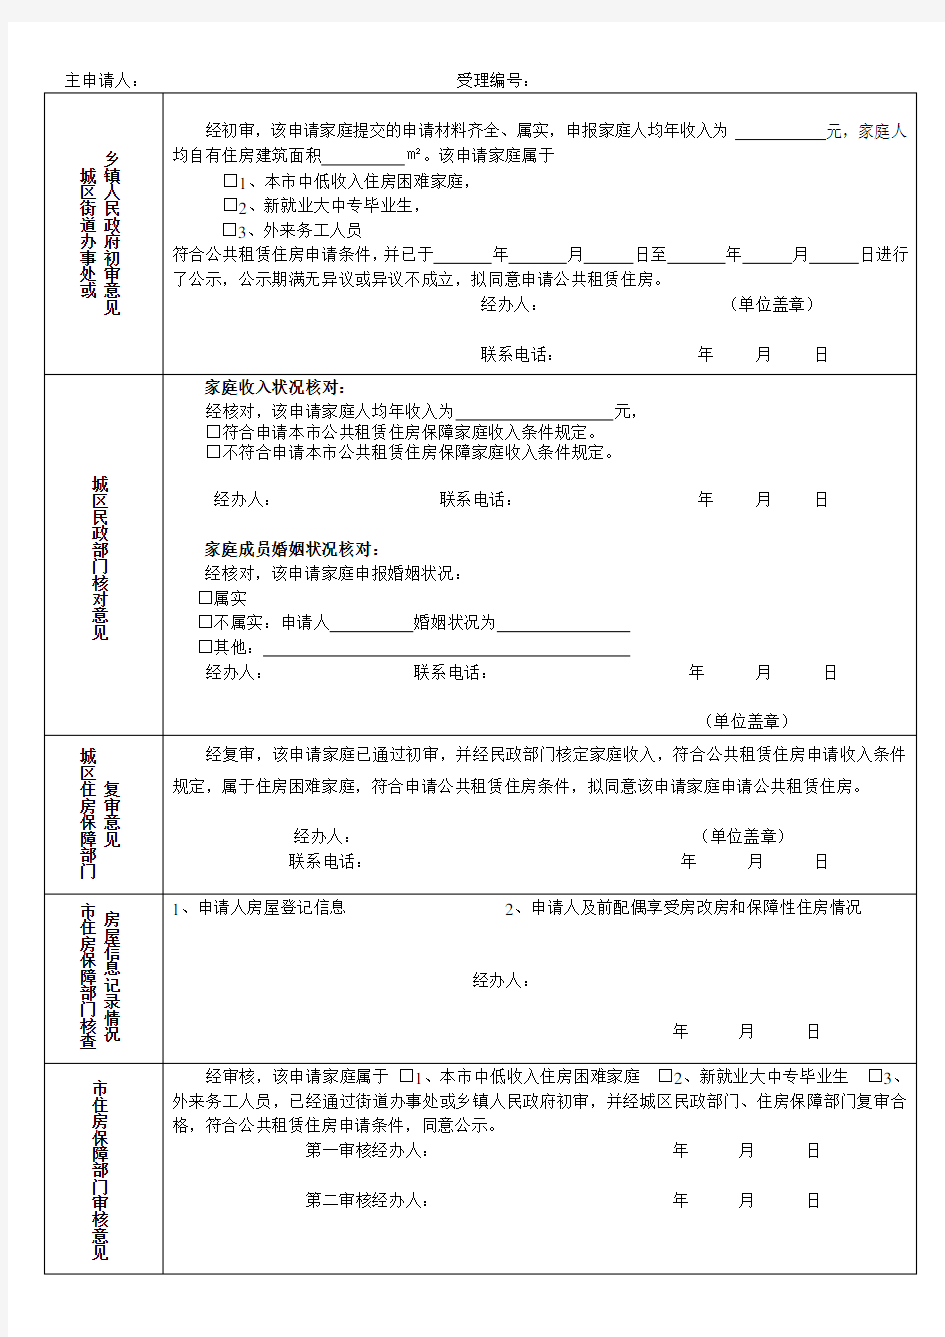 南宁市公共租赁住房保障申请表(B)